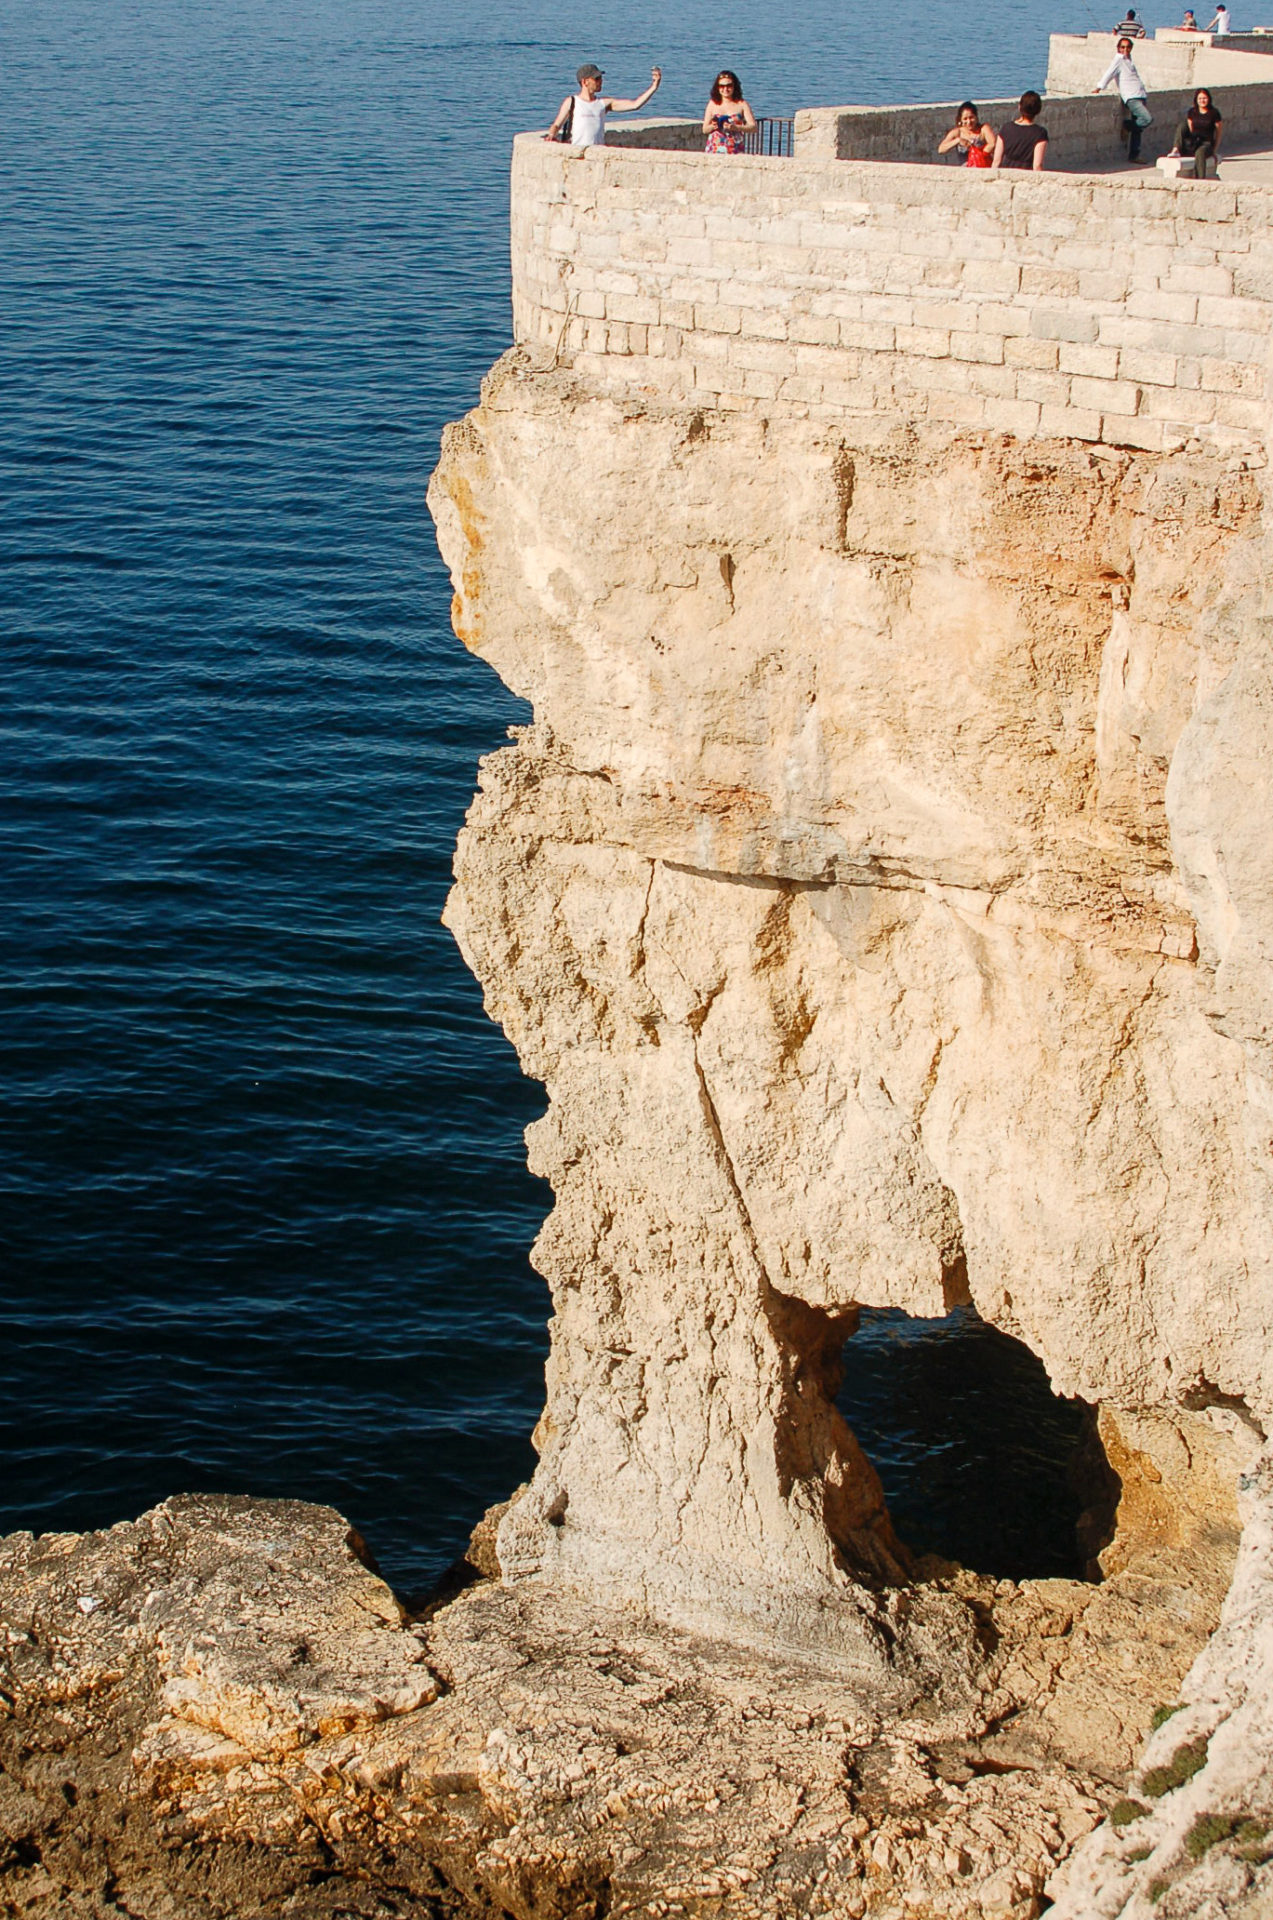 Neben den Trulli von Alberobello gehört die Steilküste von Poignano zu den größten Attraktionen Apuliens